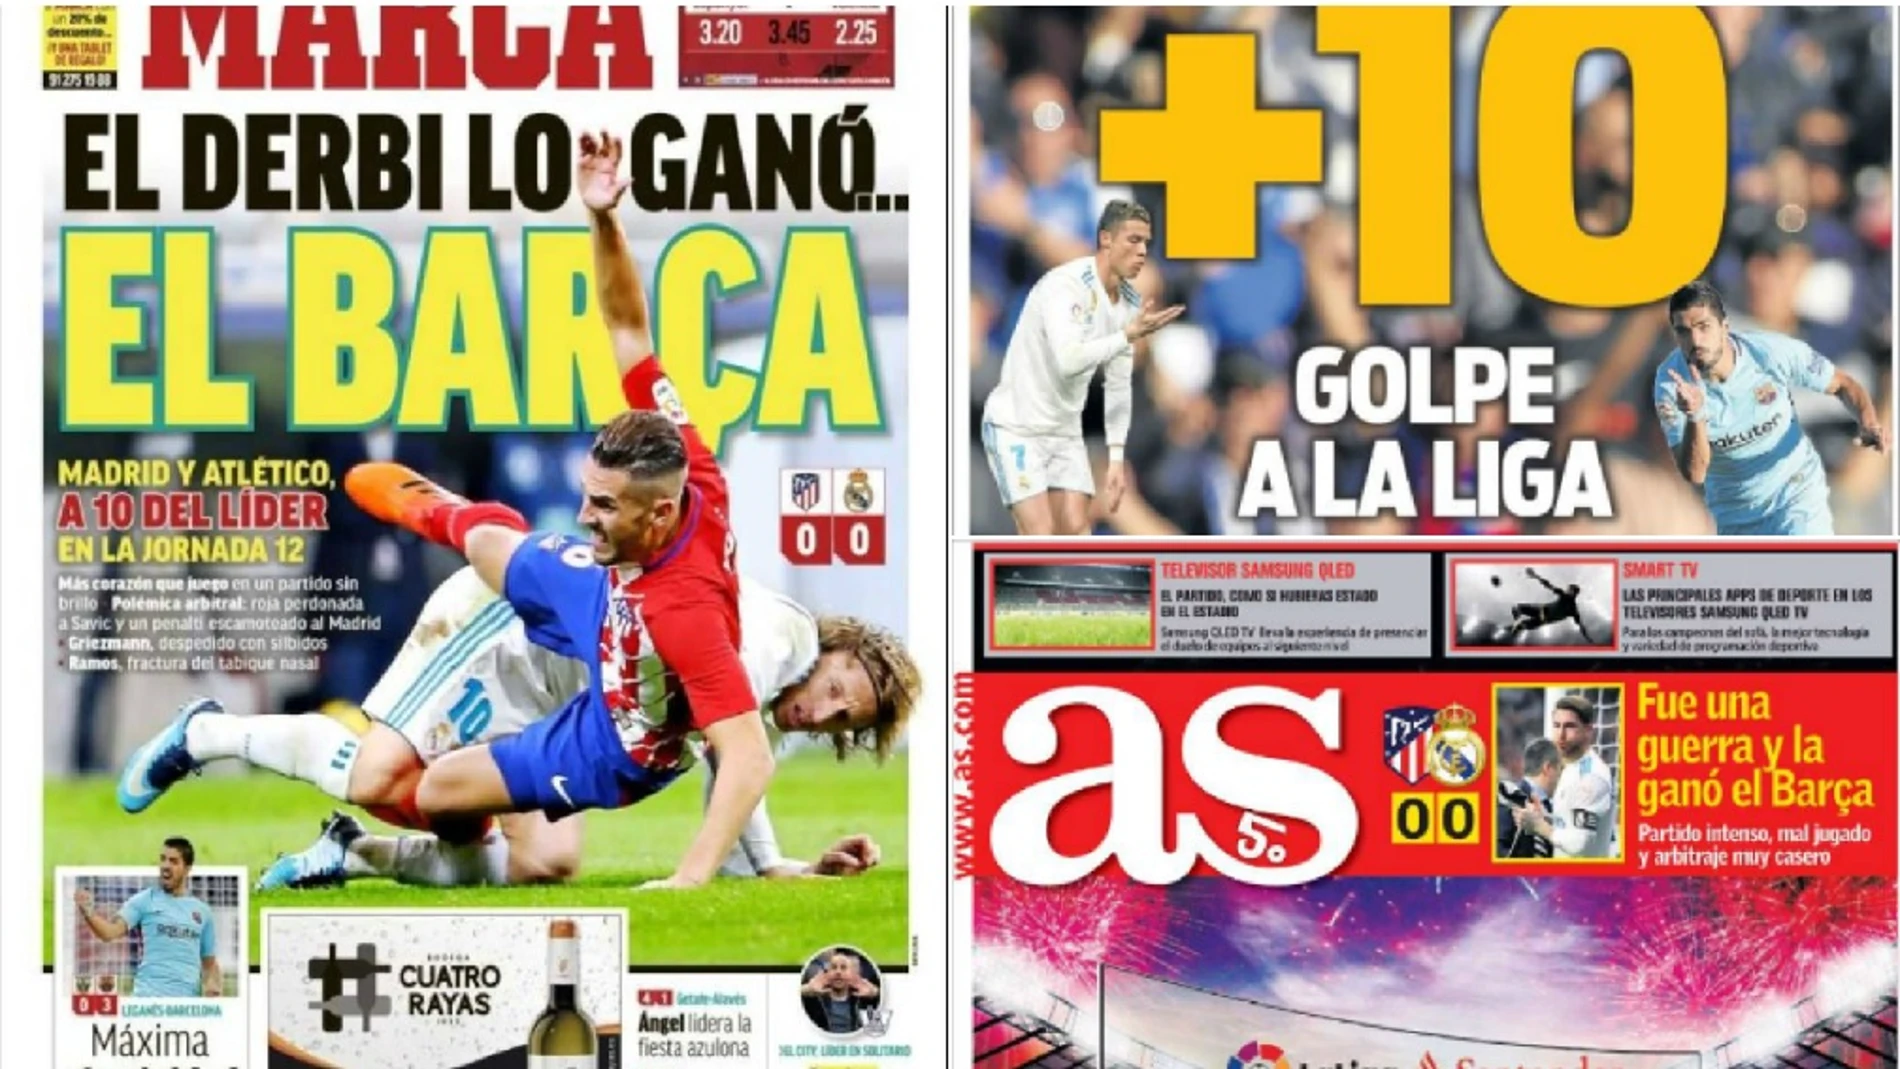 El empate en el derbi visto por la prensa: "El derbi lo el Barca", "+10" "Fue una guerra la ganó el Barça"